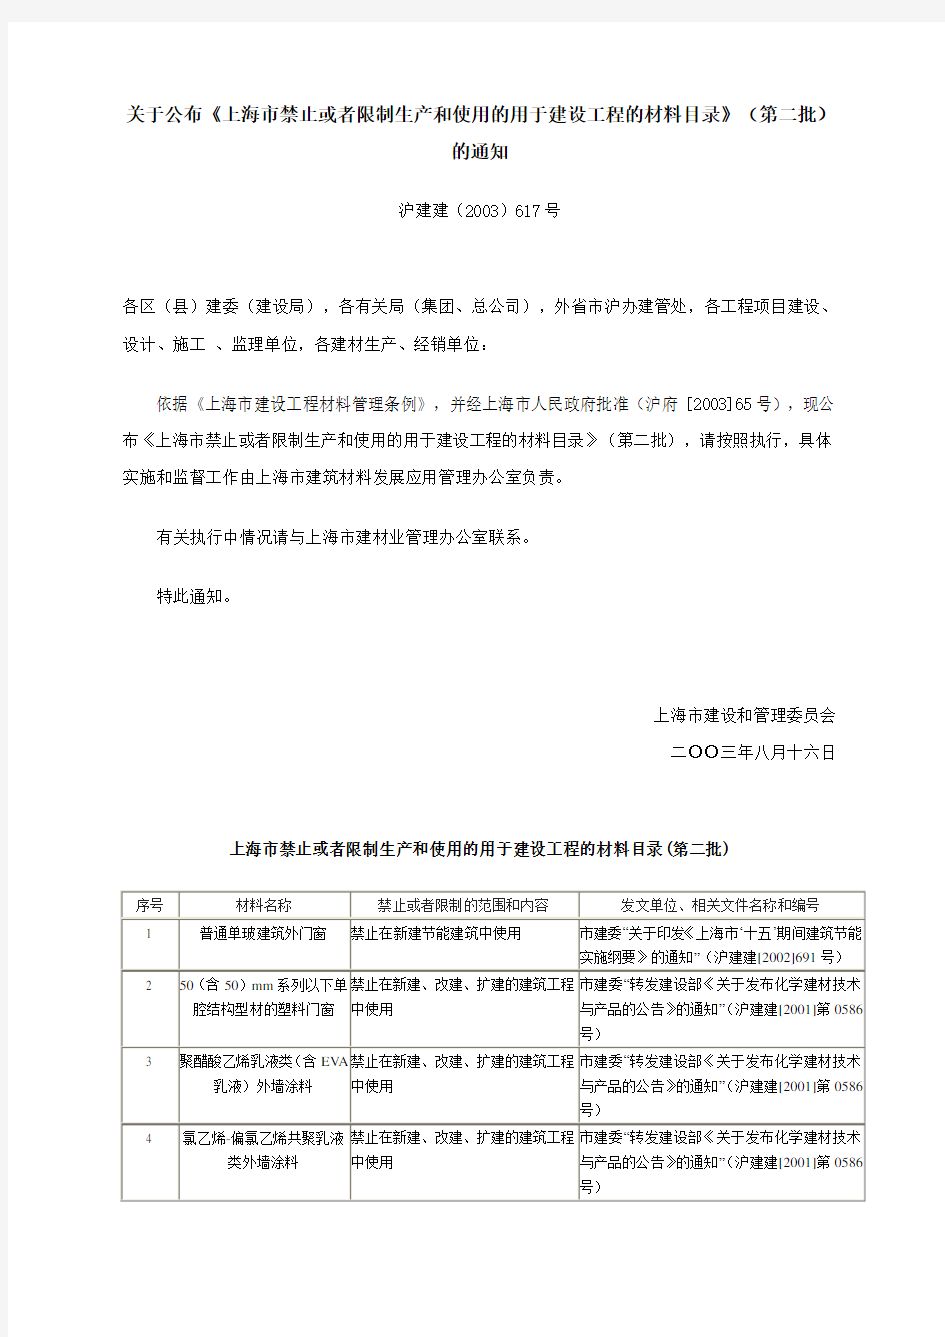 [2003]617号沪建建《上海市禁止或者限制生产和使用的用于建设工程的材料目录》(第二批)》